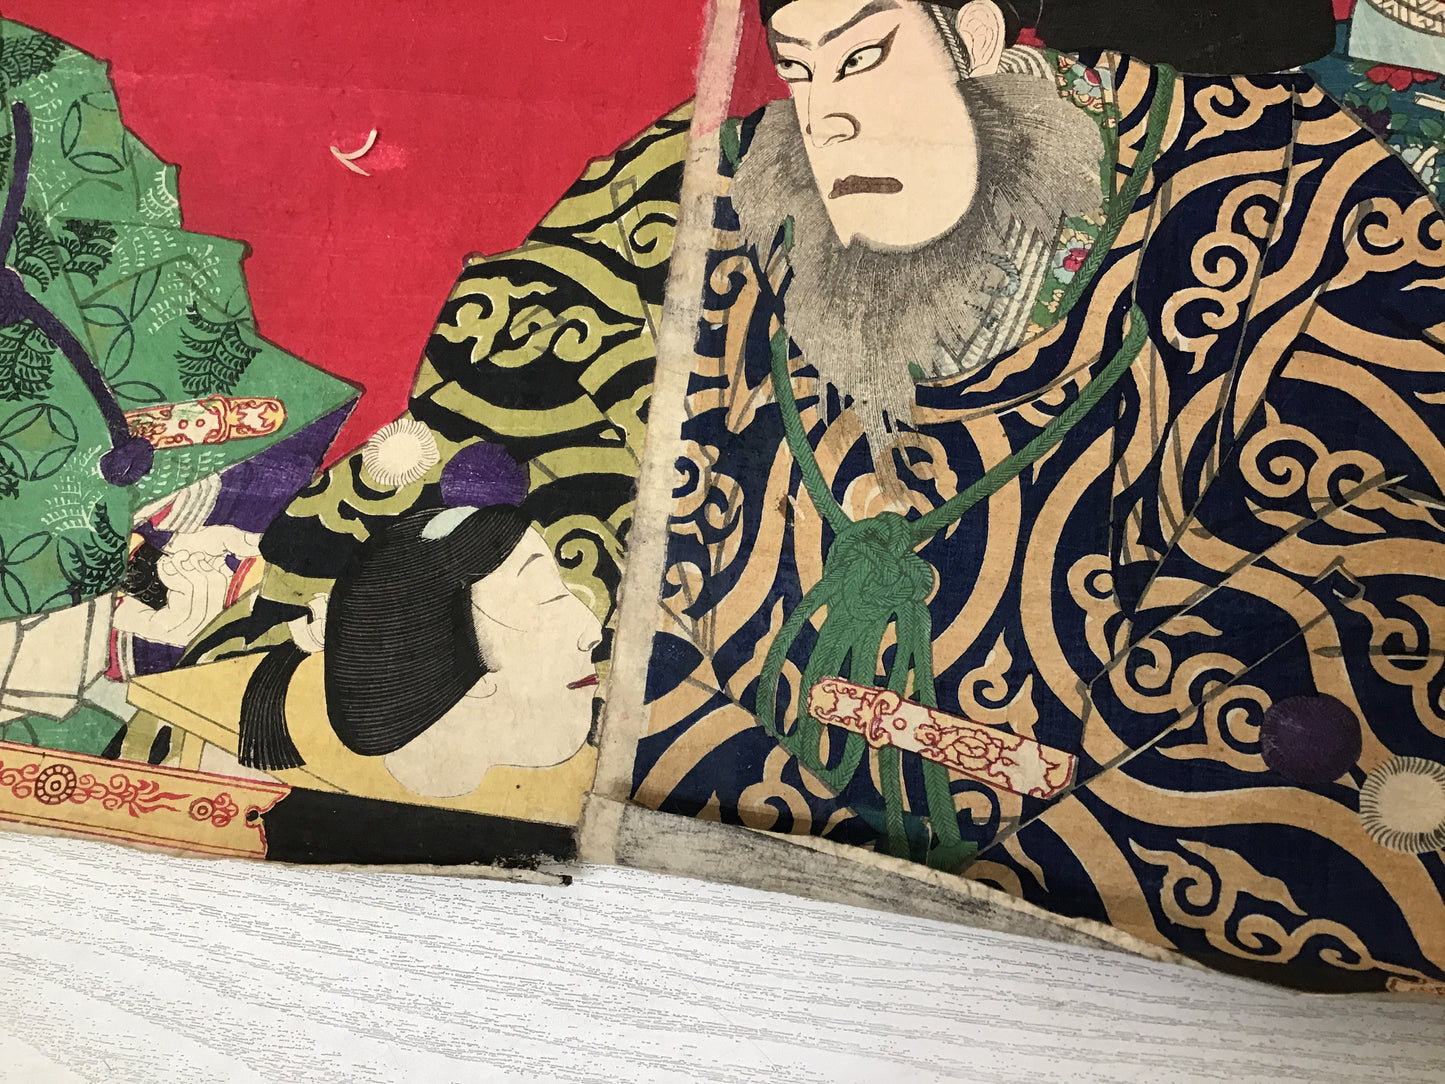 Y2449 WOODBLOCK PRINT Kunichika Kabuki 3 pieces Japanese Ukiyoe vintage painting